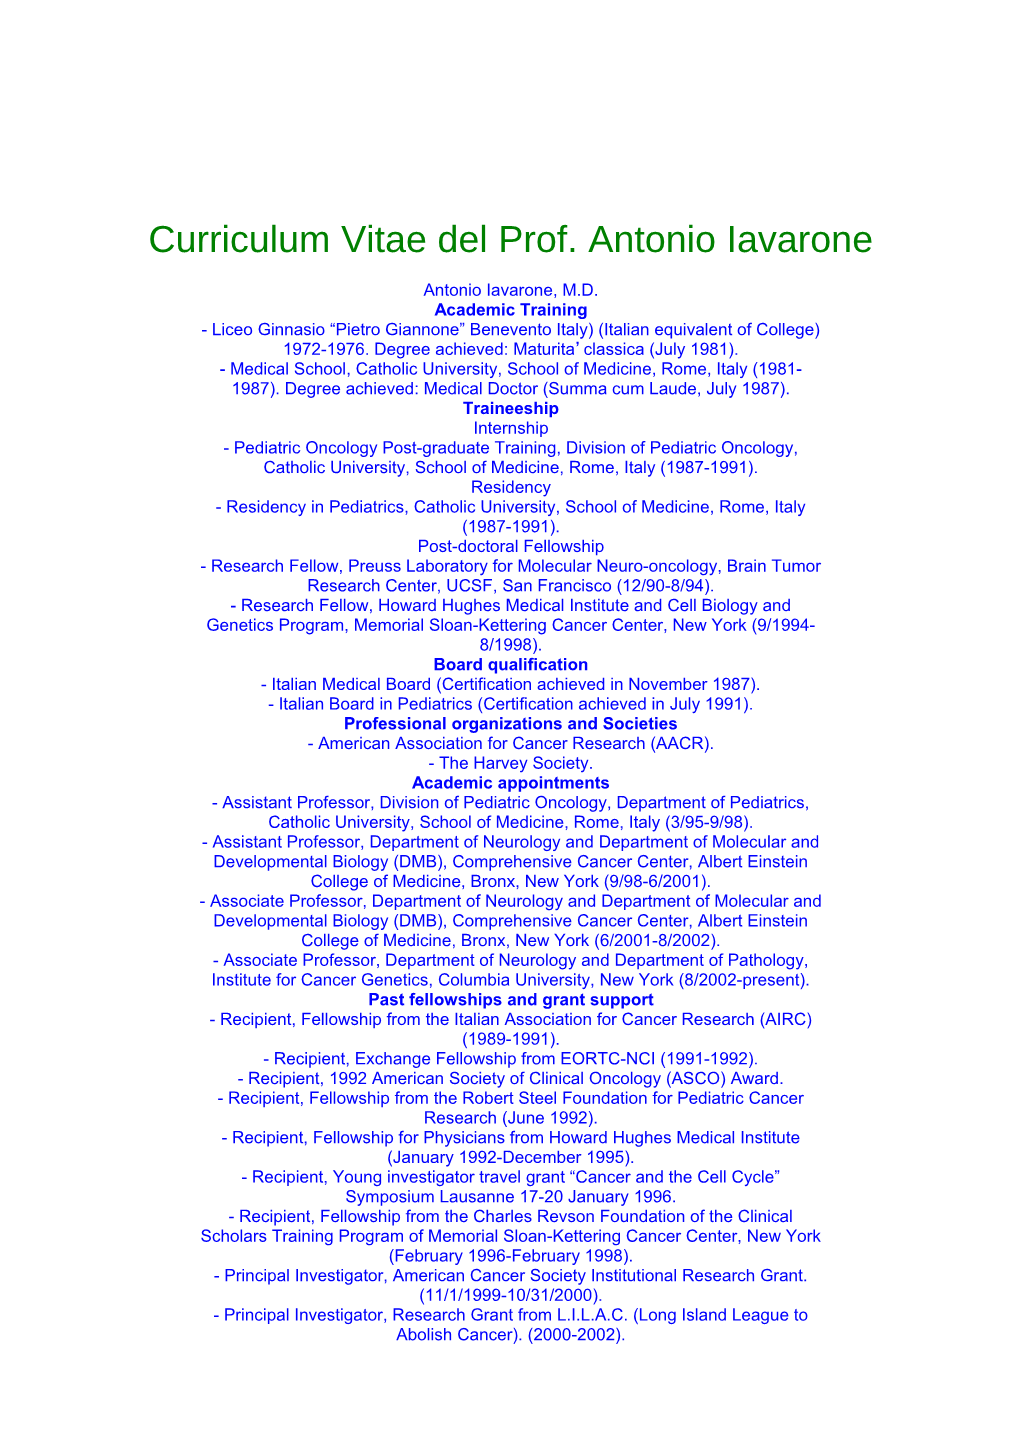 Curriculum Vitae Del Prof. Antonio Iavarone